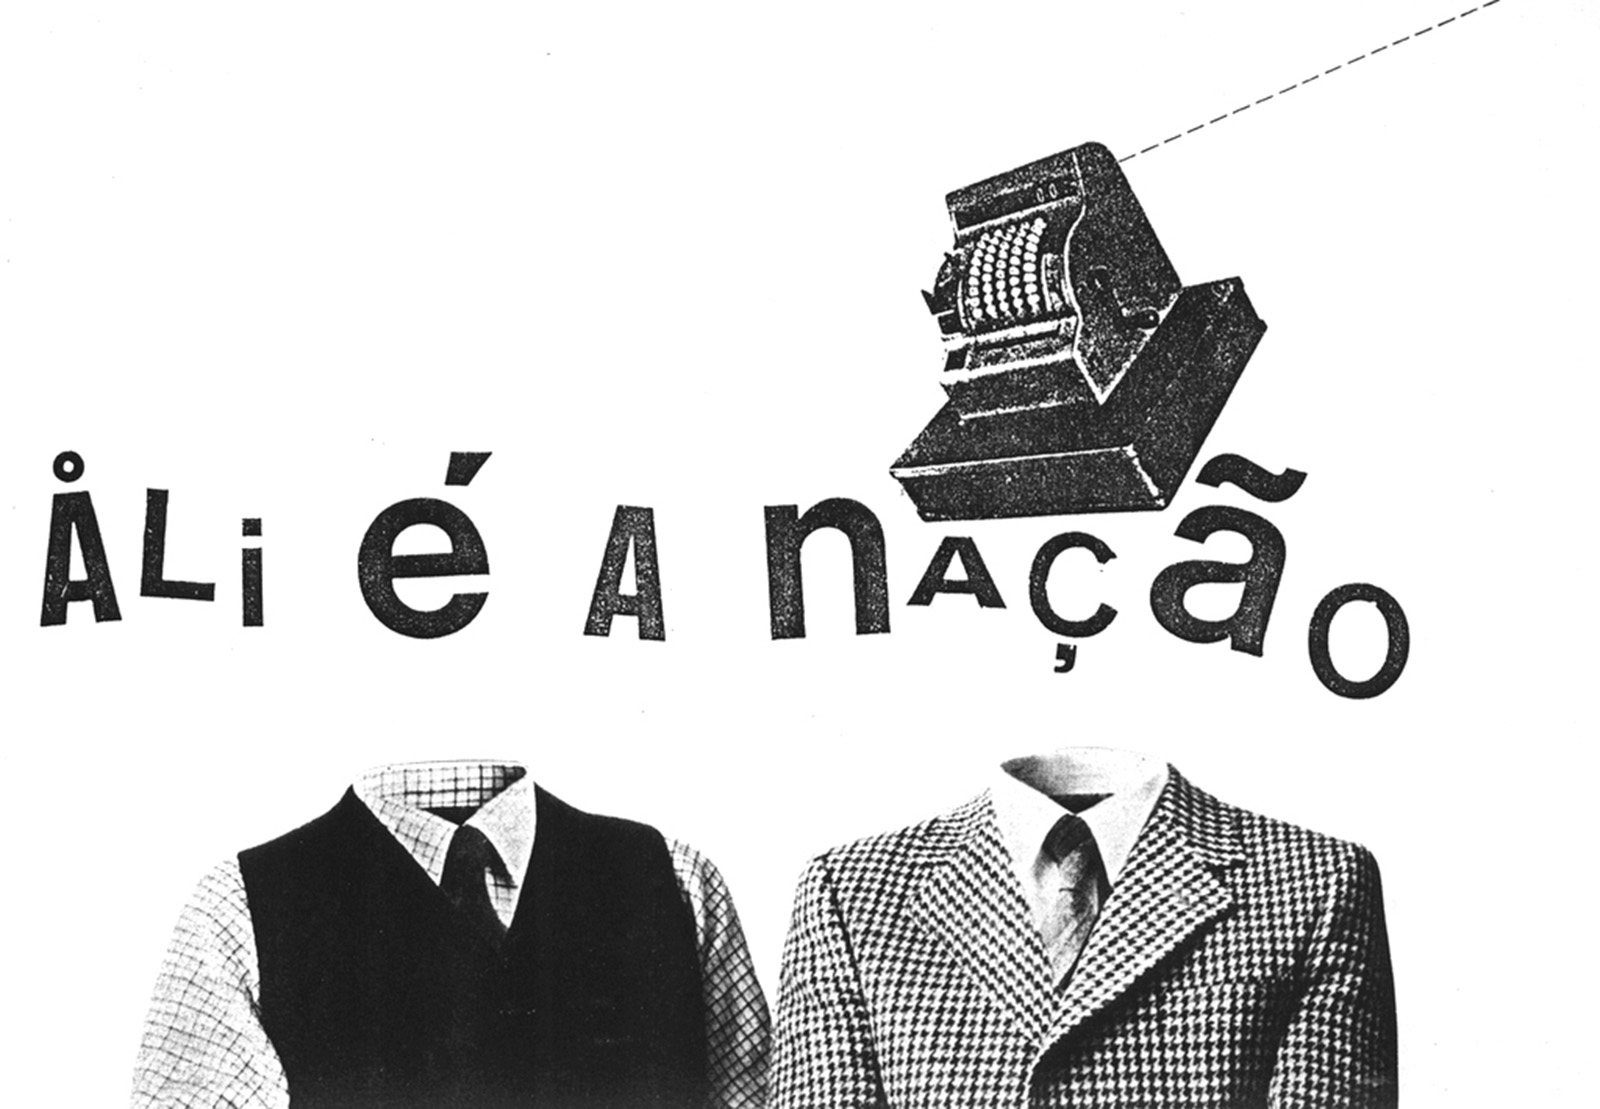 Poesia Experimental Portuguesa: A obra "Alienação", criada nos anos 1980 por A. Nelos, está no acervo da mostra em cartaz na Caixa Cultural Curitiba. (Imagem: Divulgação)